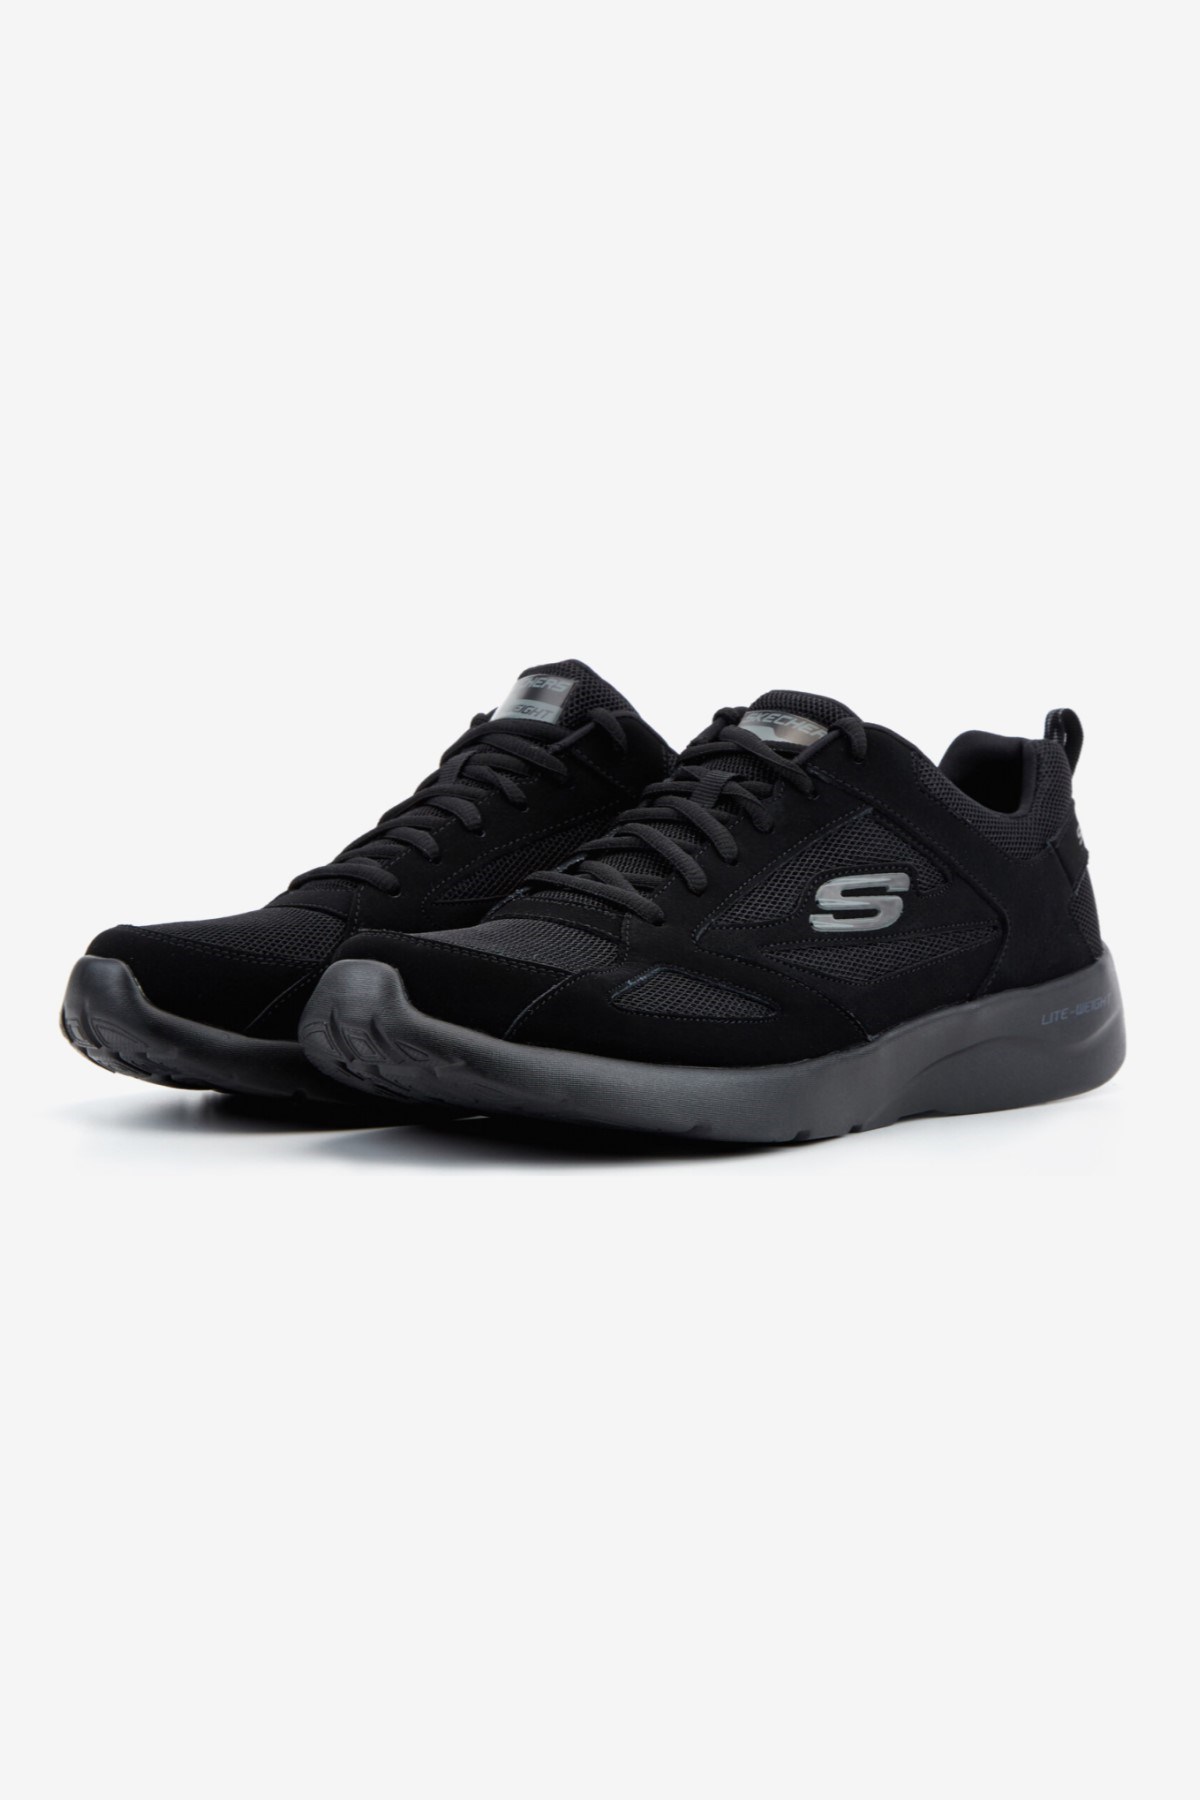 Skechers Kadın Ayakkabı S58363 Siyah